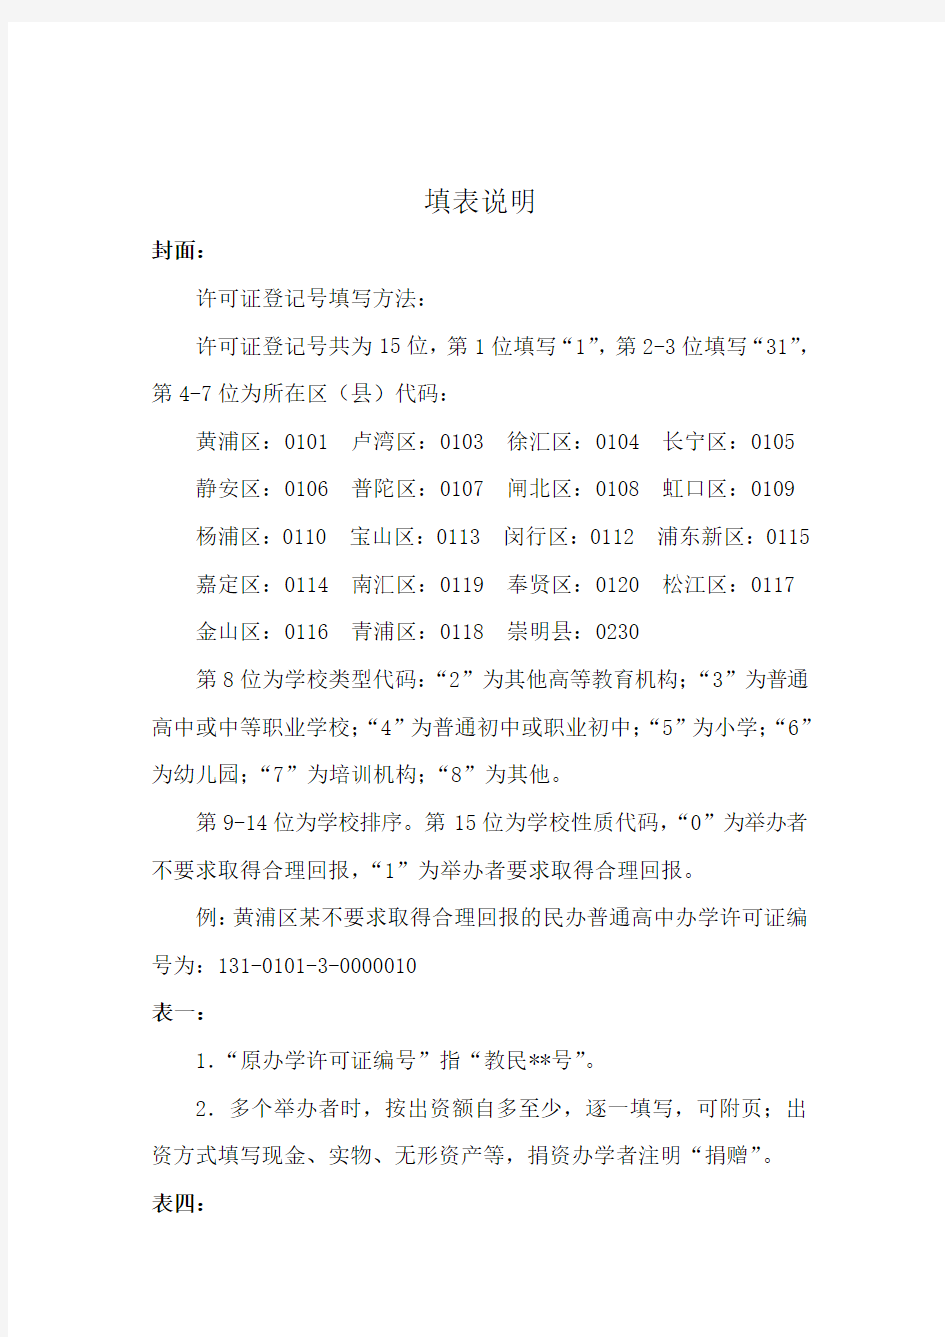 上海市民办学校办学许可证申领登记表 - 浦东新区教育门户网站